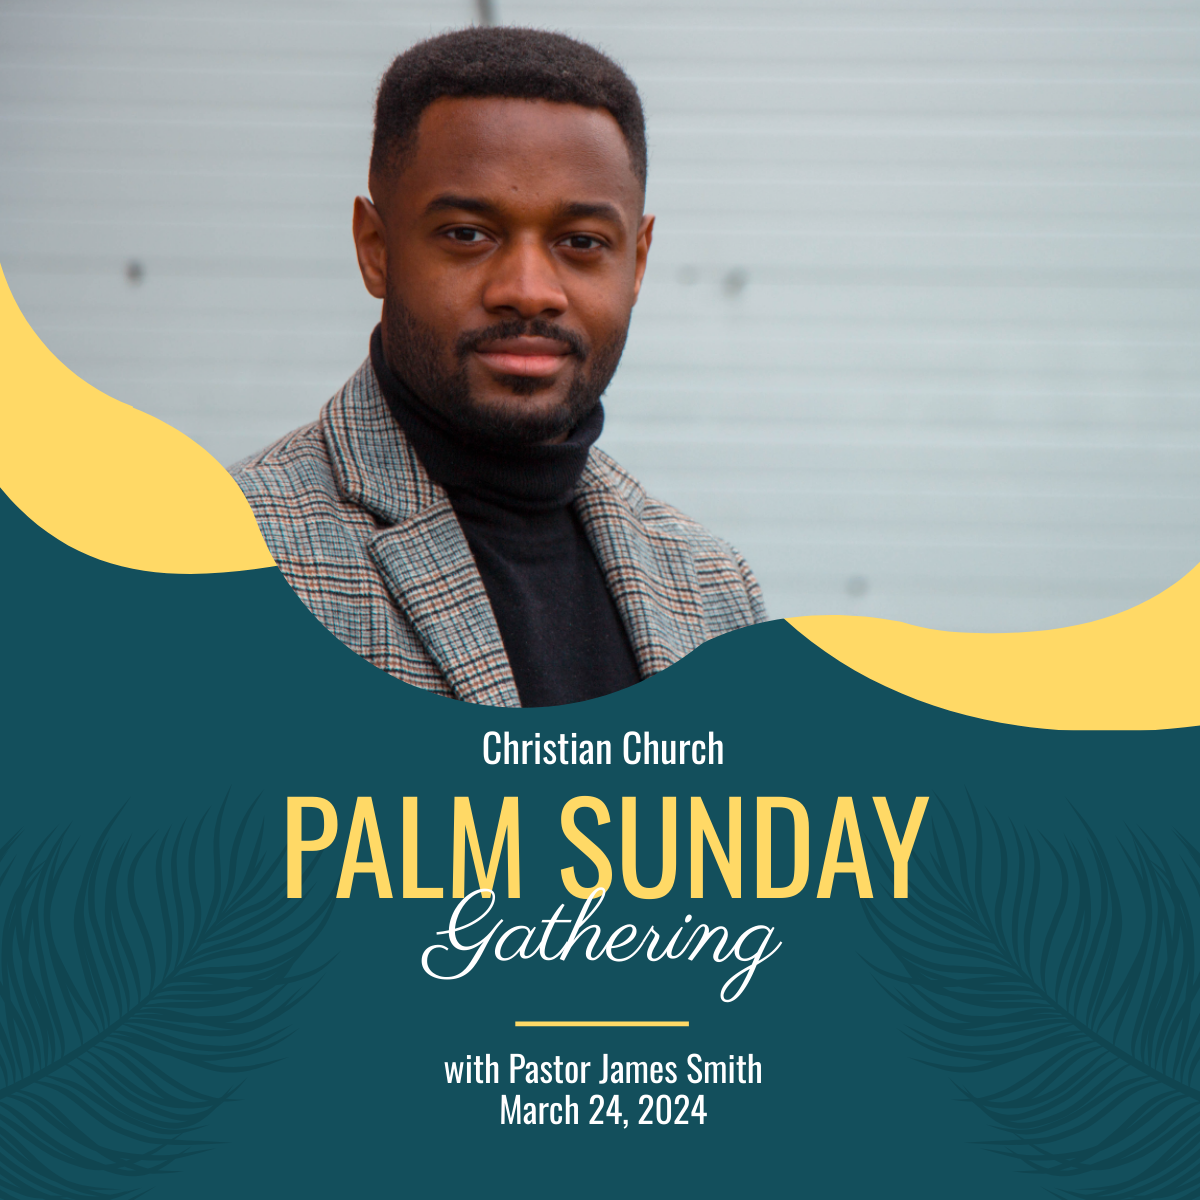 Palm Sunday Celebration Linkedin Post Template